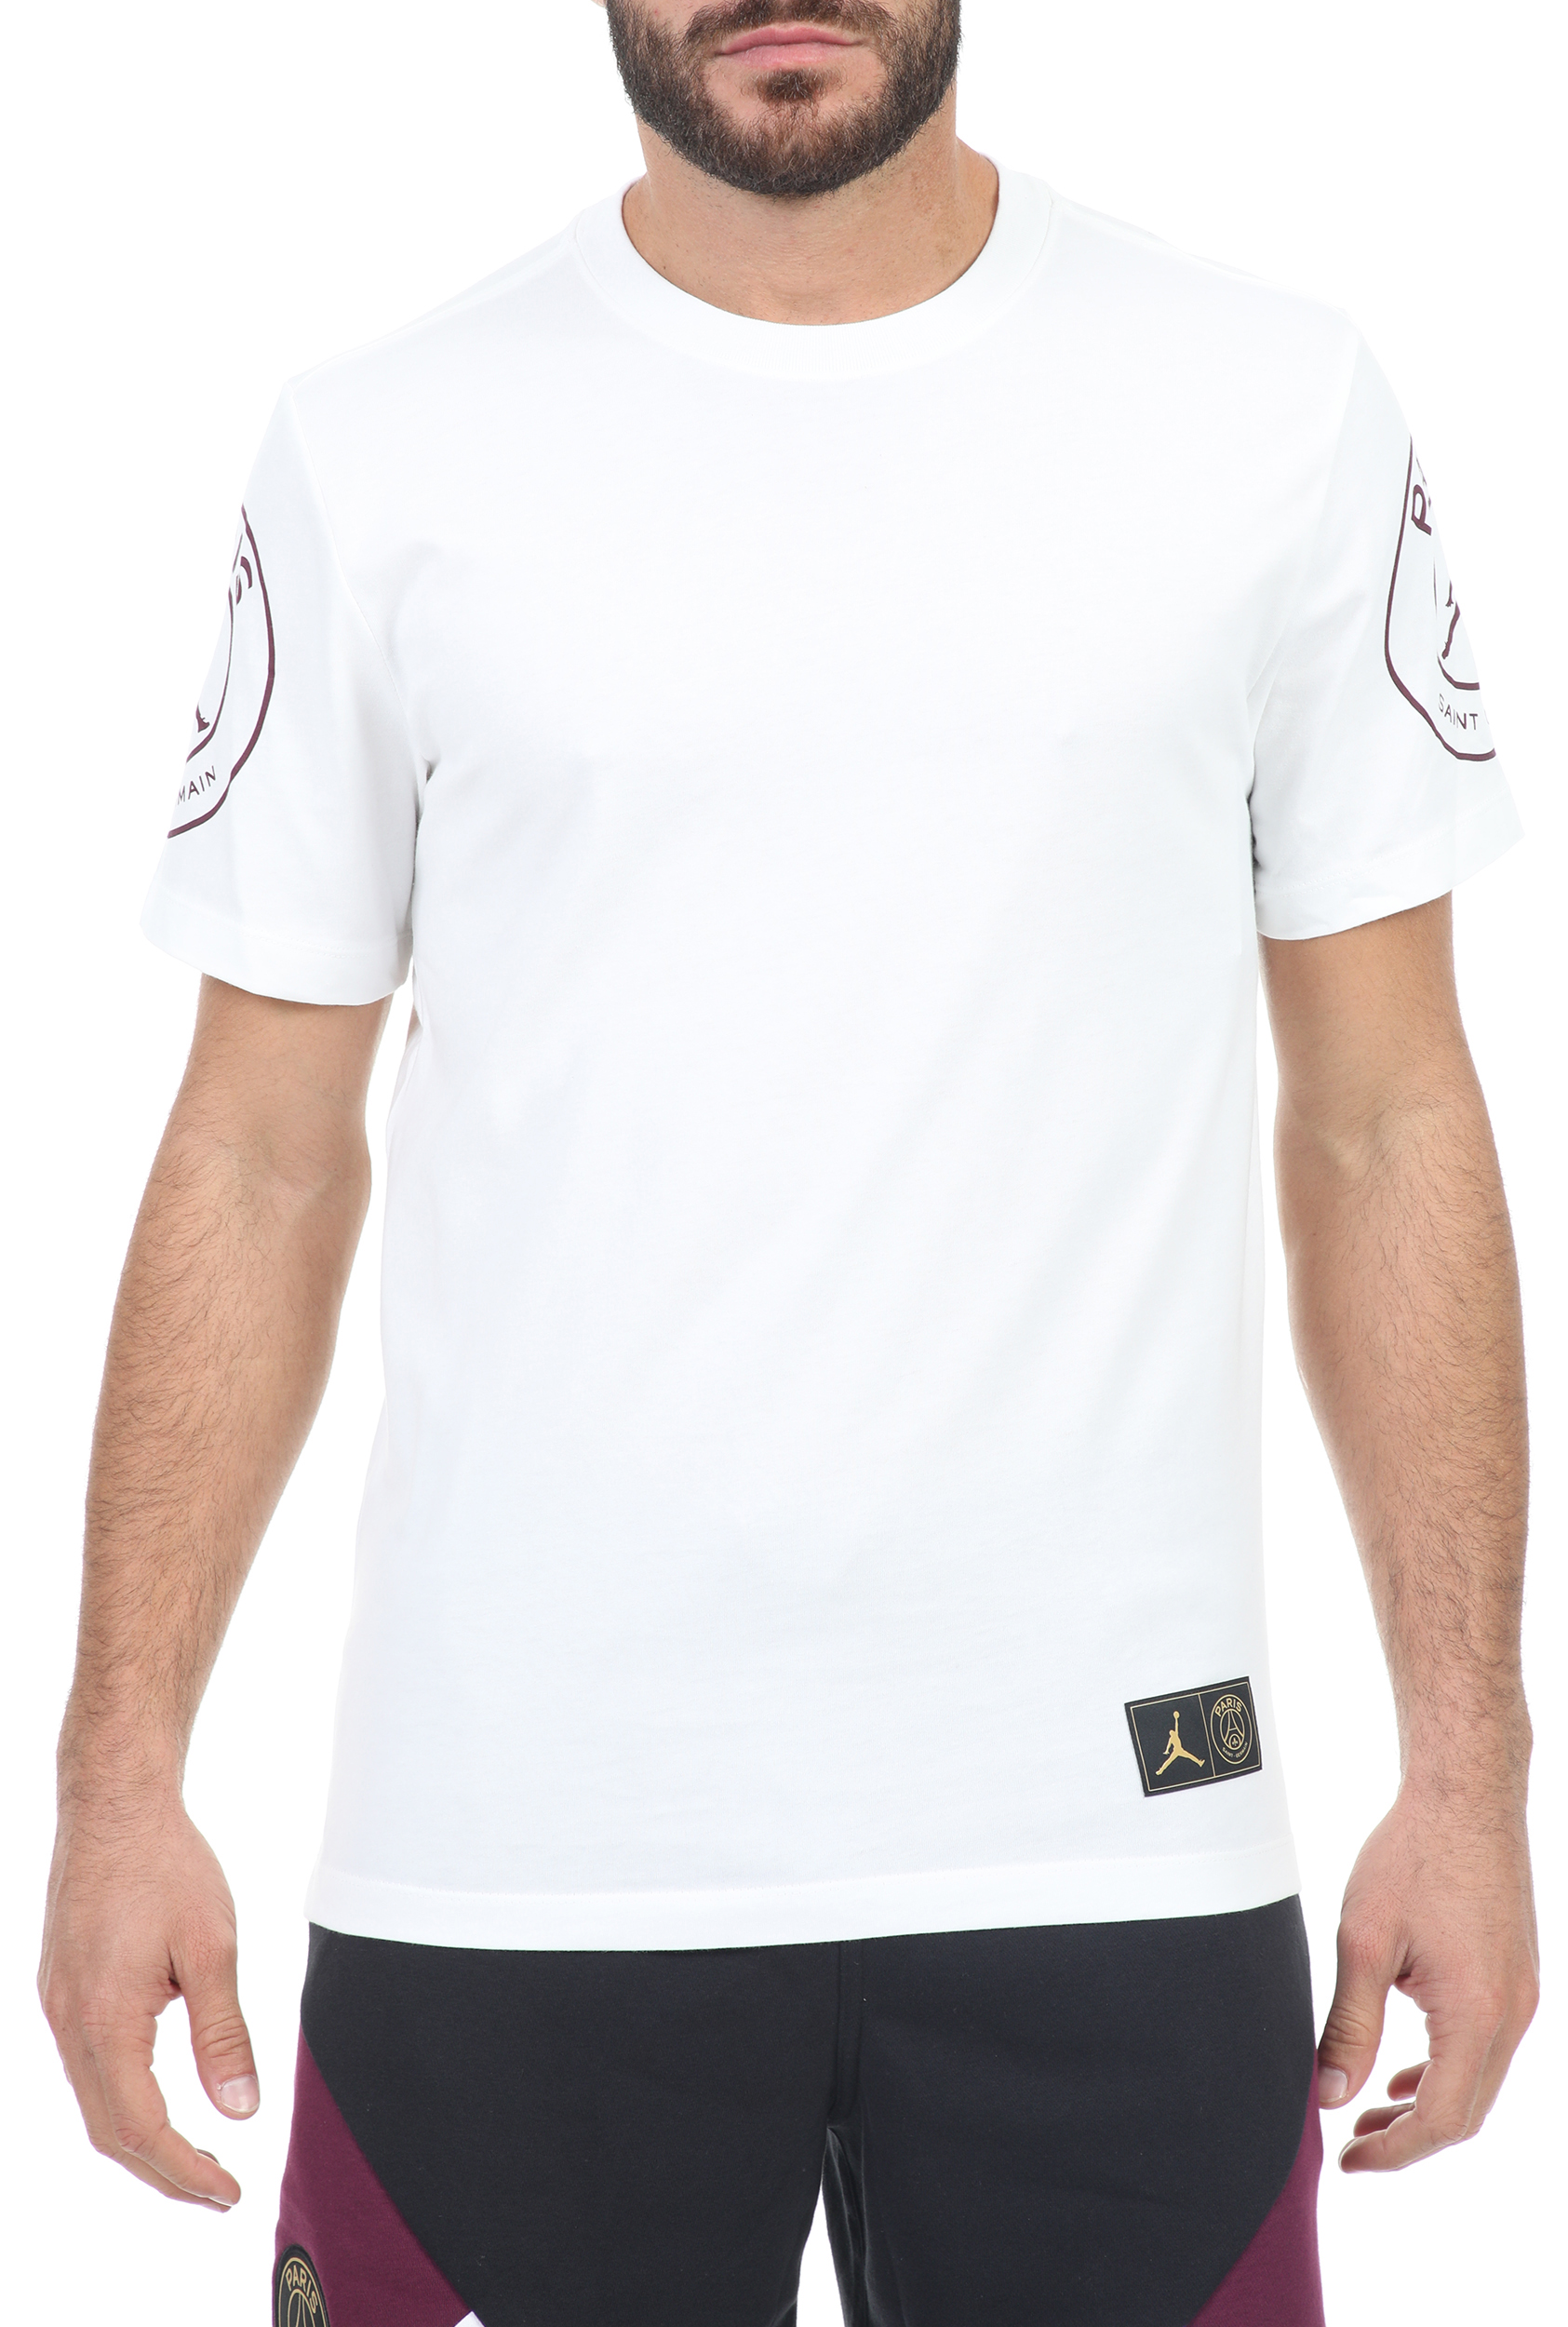 Ανδρικά/Ρούχα/Αθλητικά/T-shirt NIKE - Ανδρικό t-shirt NIKE M J PSG LOGO TEE λευκό